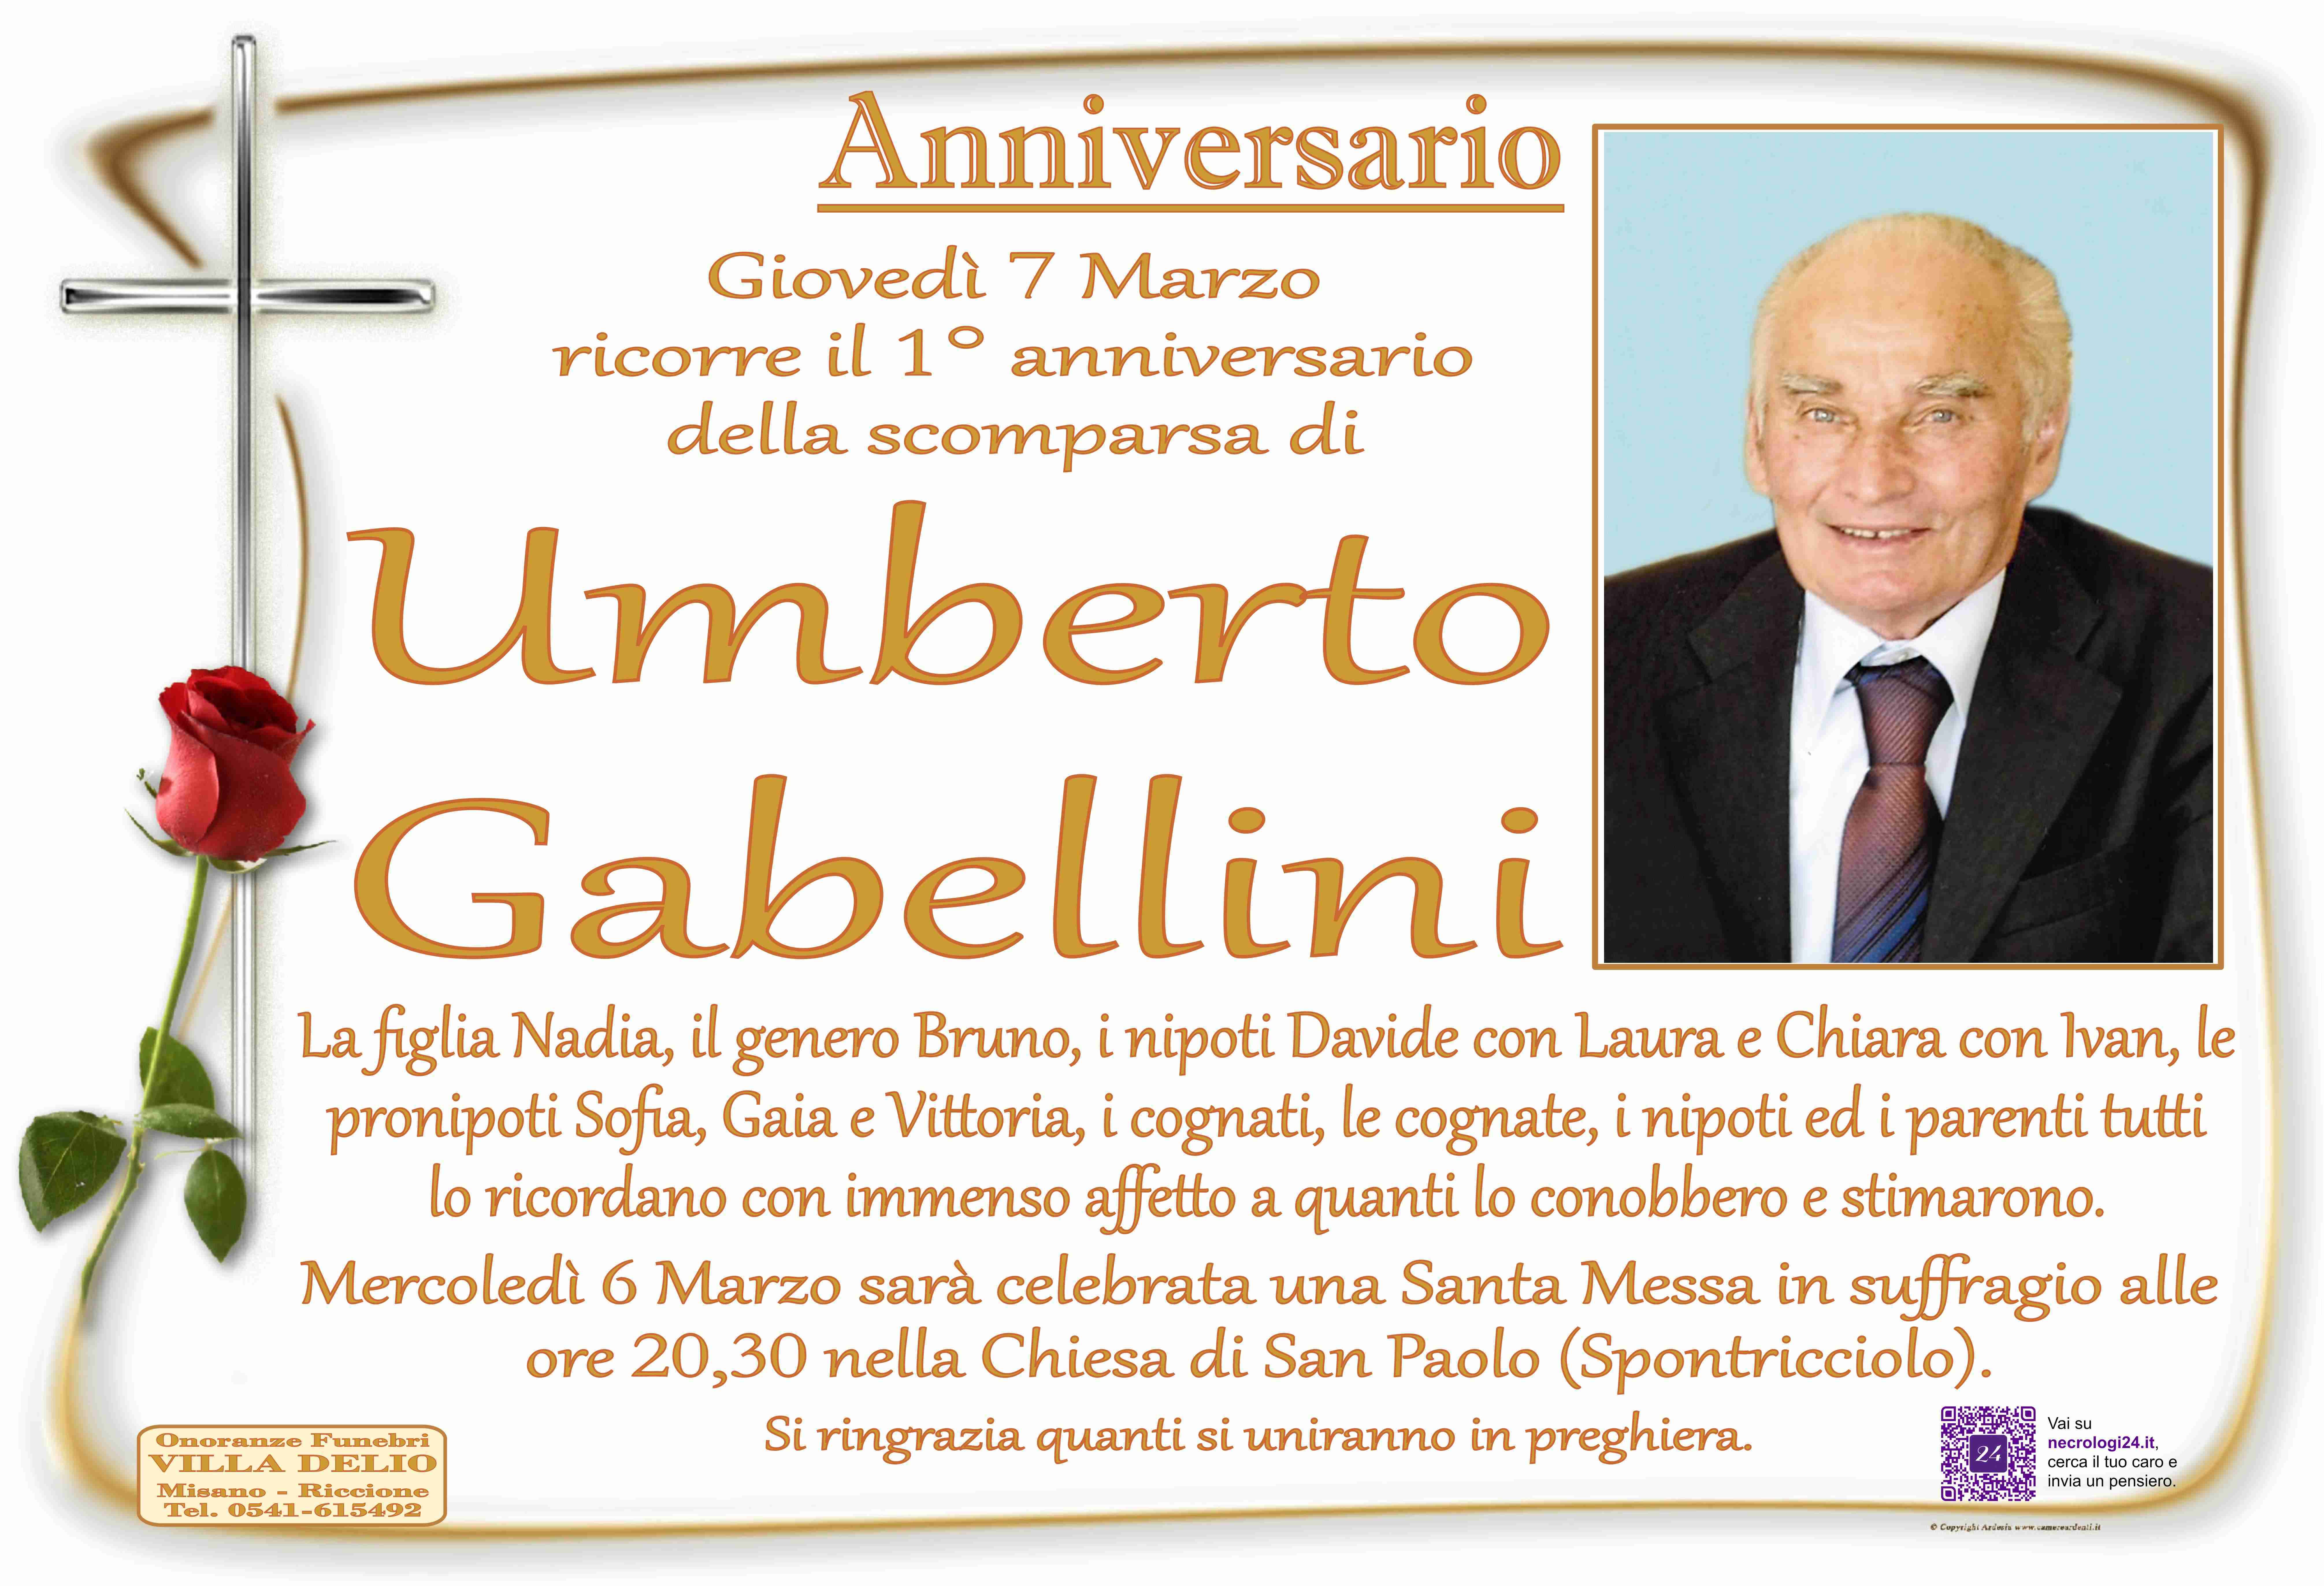 Umberto Gabellini